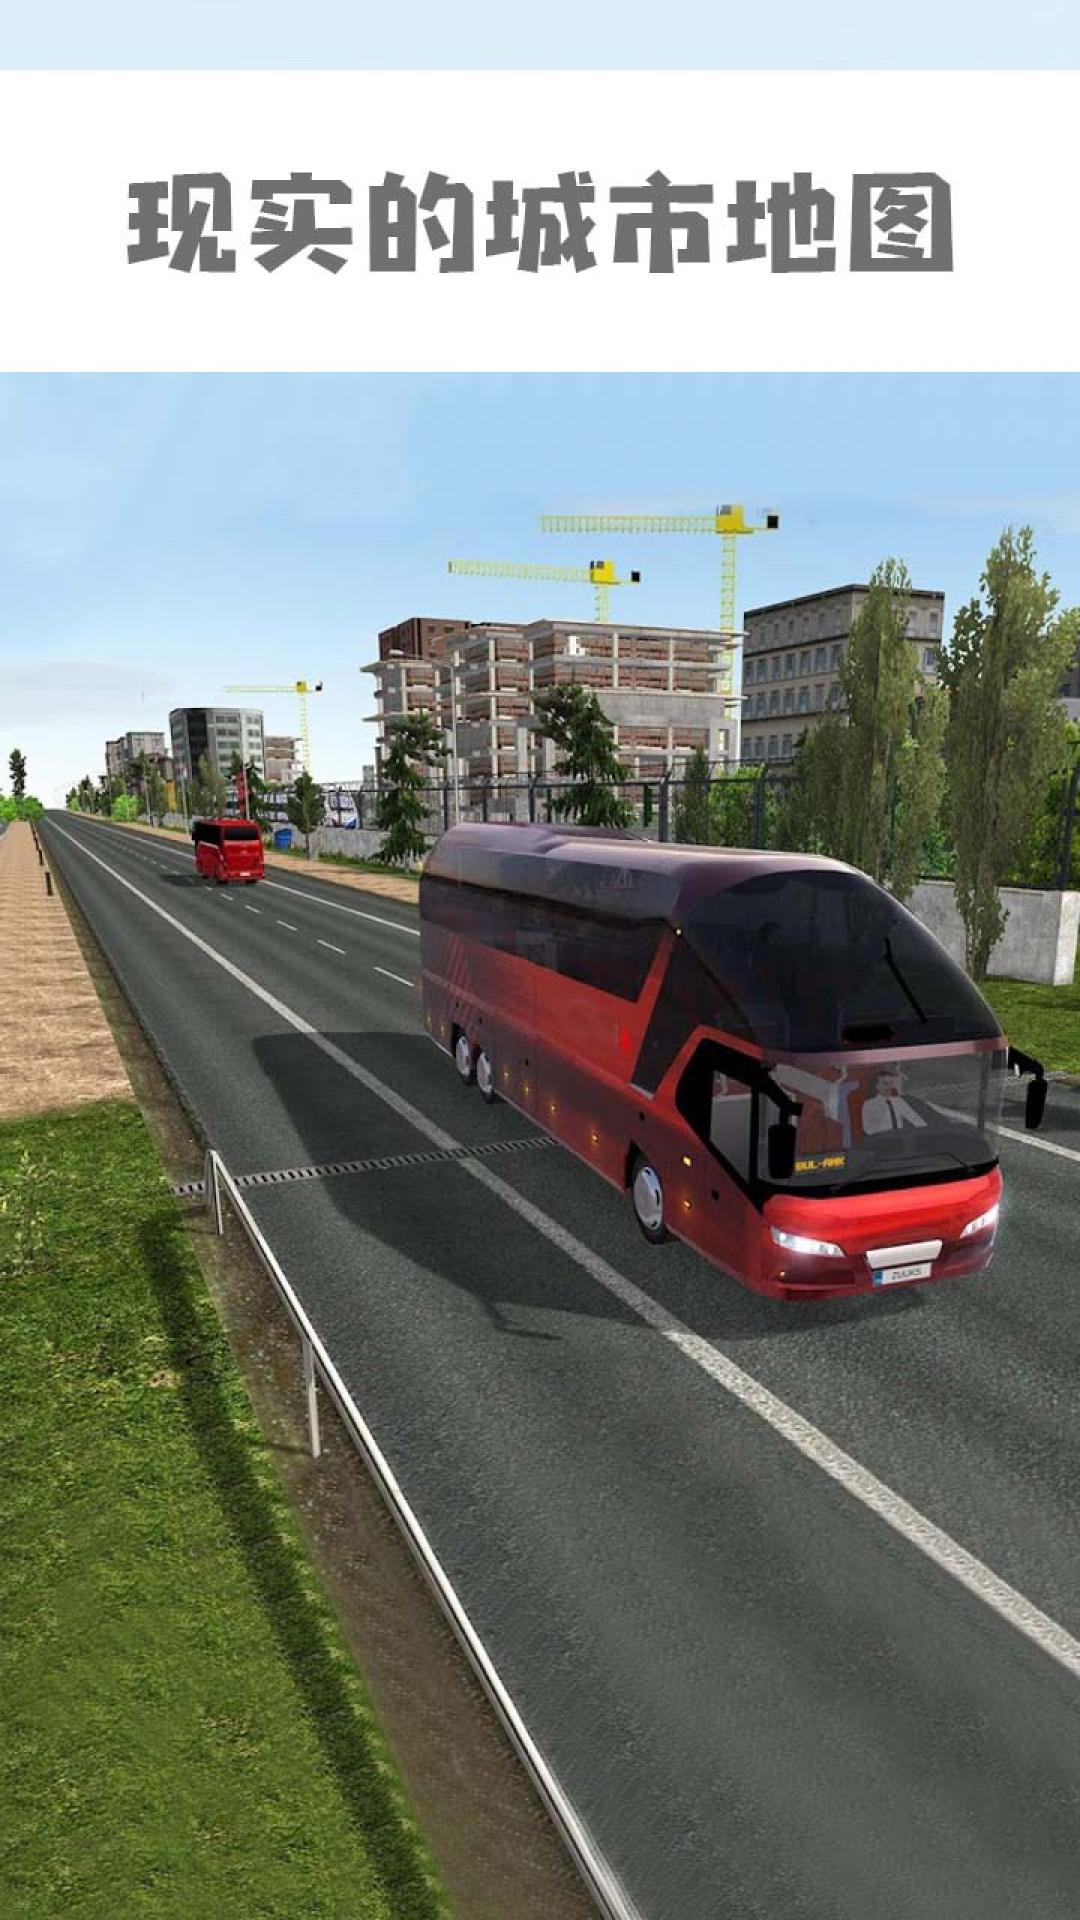 公交车模拟器破解版无限金币下载-公交车模拟器破解版游戏下载